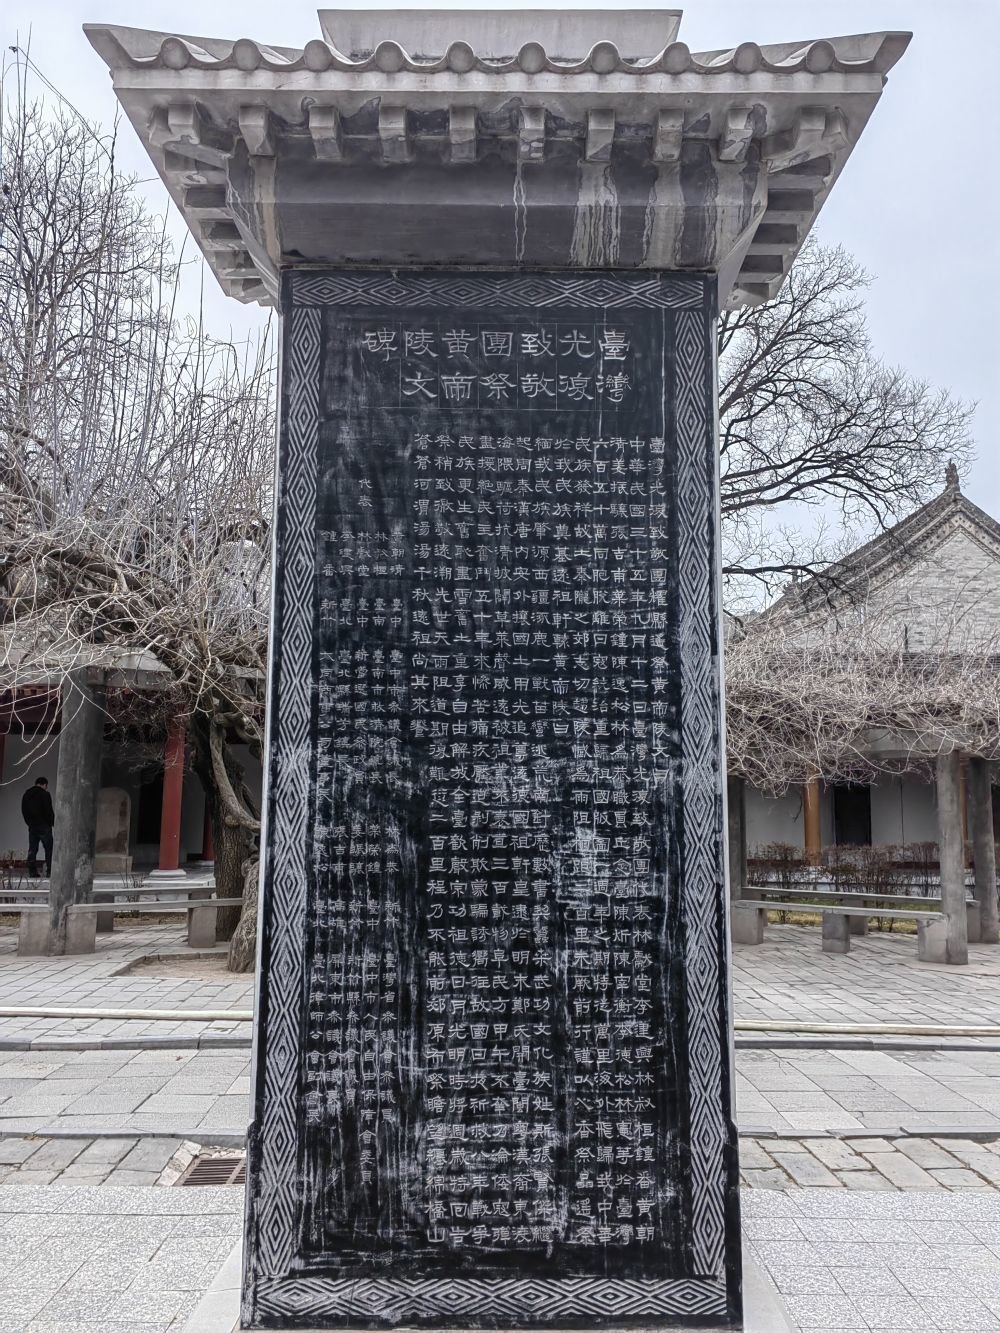 轩辕庙内的“台湾光复致敬团祭黄帝陵文碑”正面。新华社记者孙正好摄